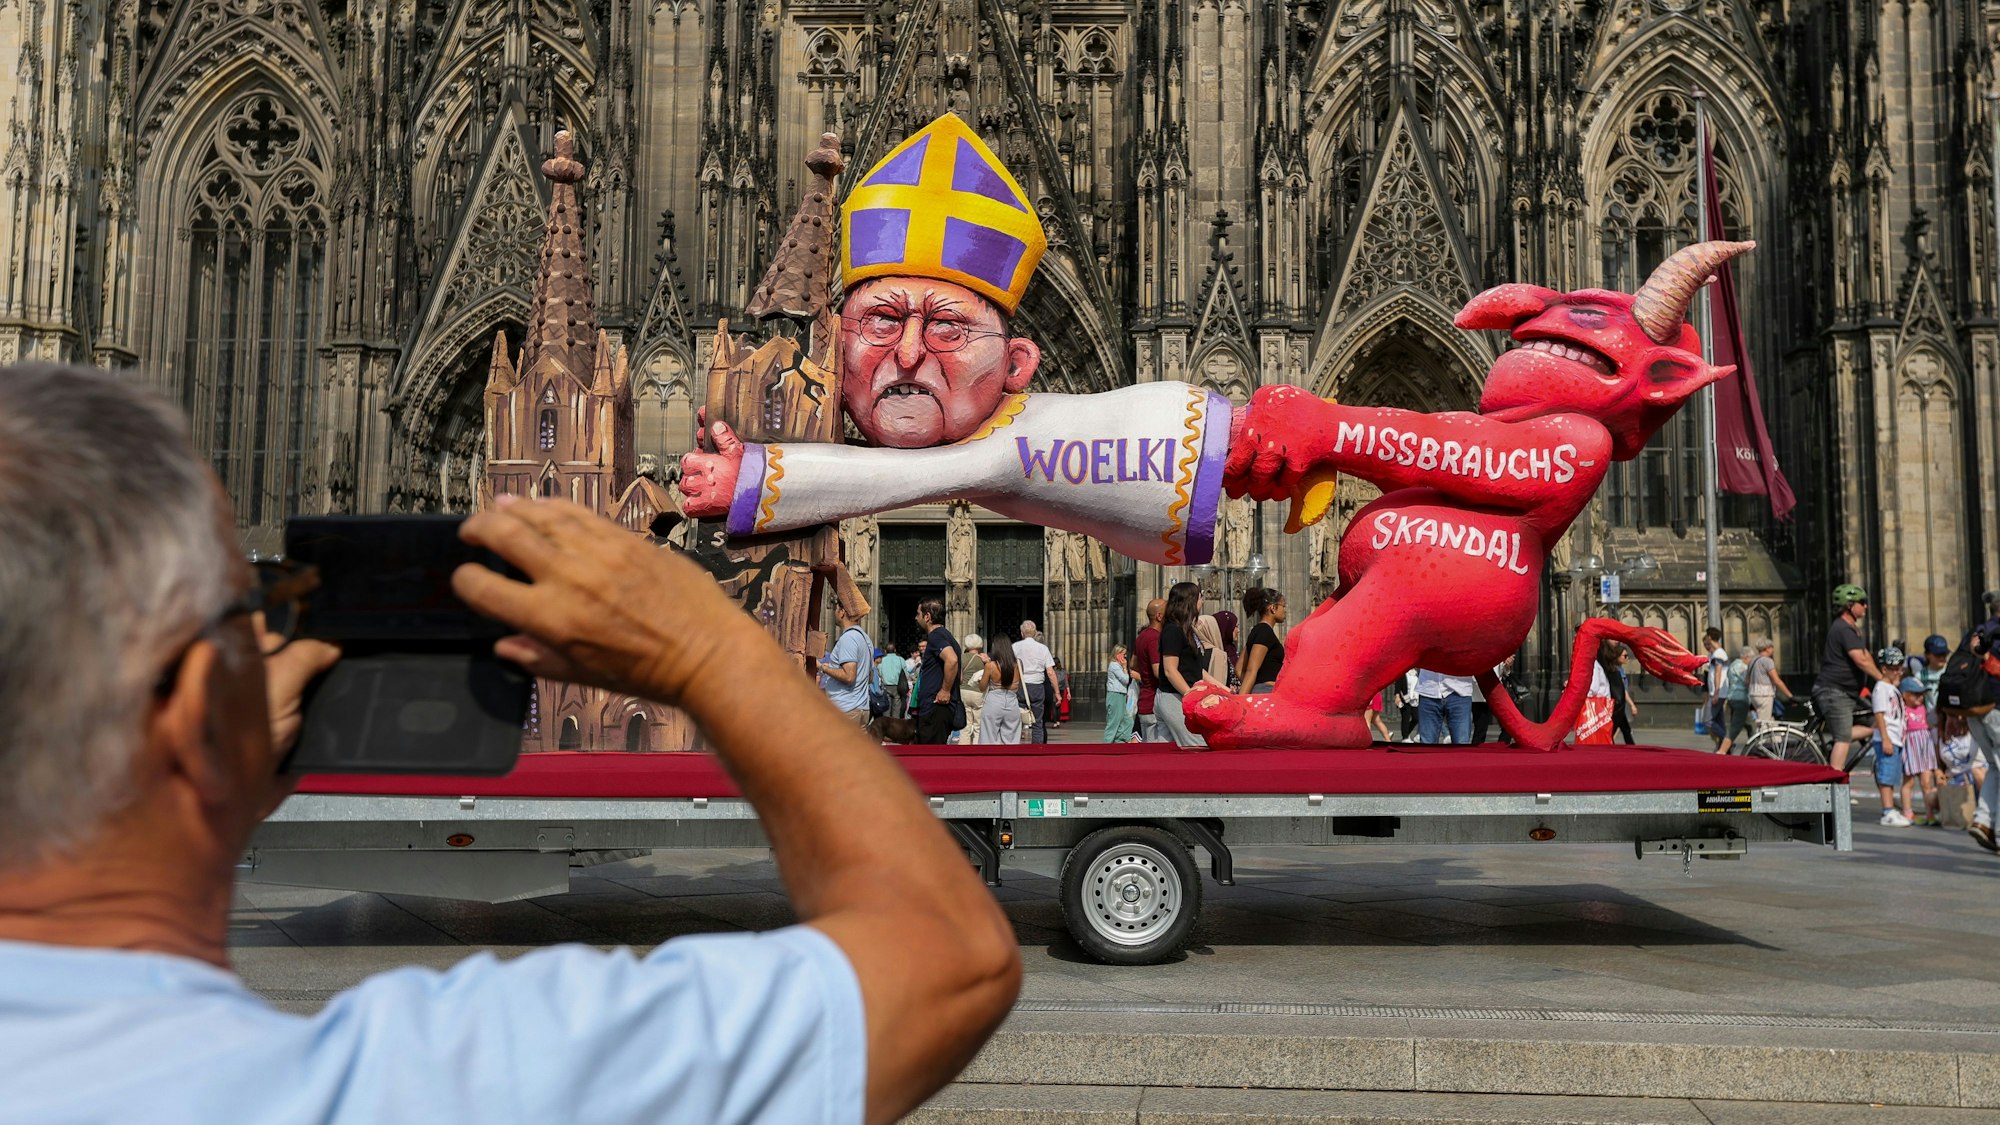 Protestaktion am Freitag vor dem Kölner Dom: Der berühmte Wagenbauer Jacques Tilly kritisiert den Kölner Kardinal Woelki mit einem Persiflagewagen.



